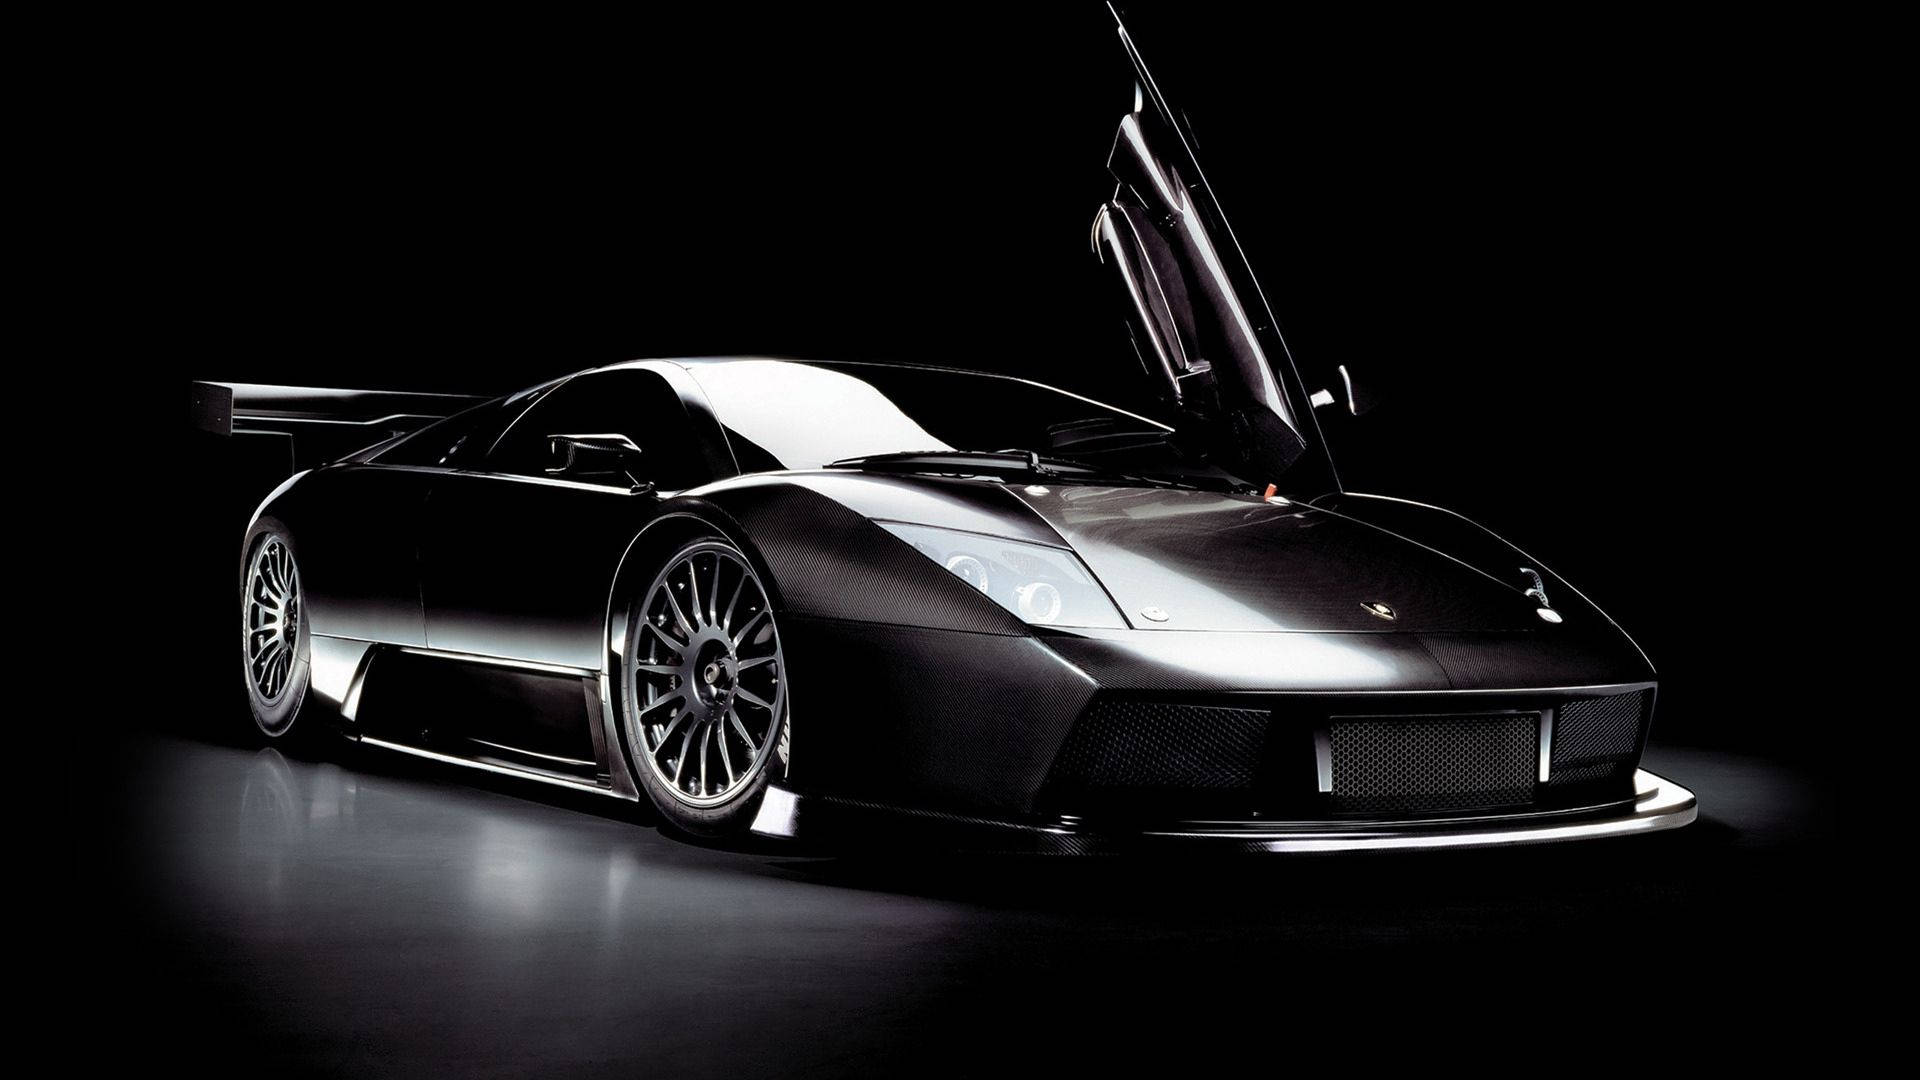 Stunning Black Lamborghini Gallardo Car Background